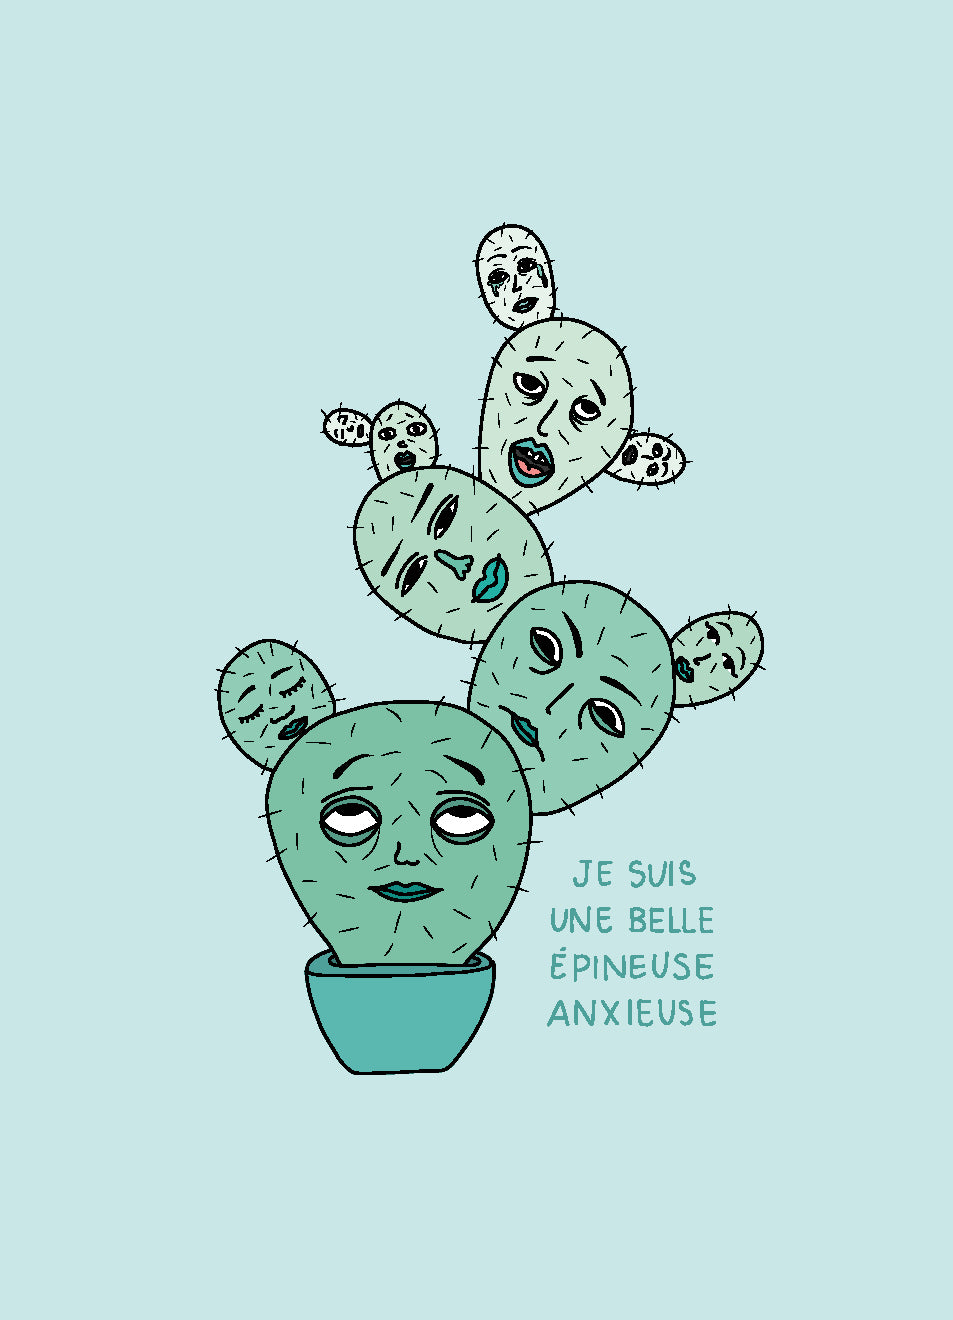 Je suis une belle épineuse anxieuse · Impression A4 - Dessin de cactus avec visages anxieux et émotifs. Teintes de bleus et verts.